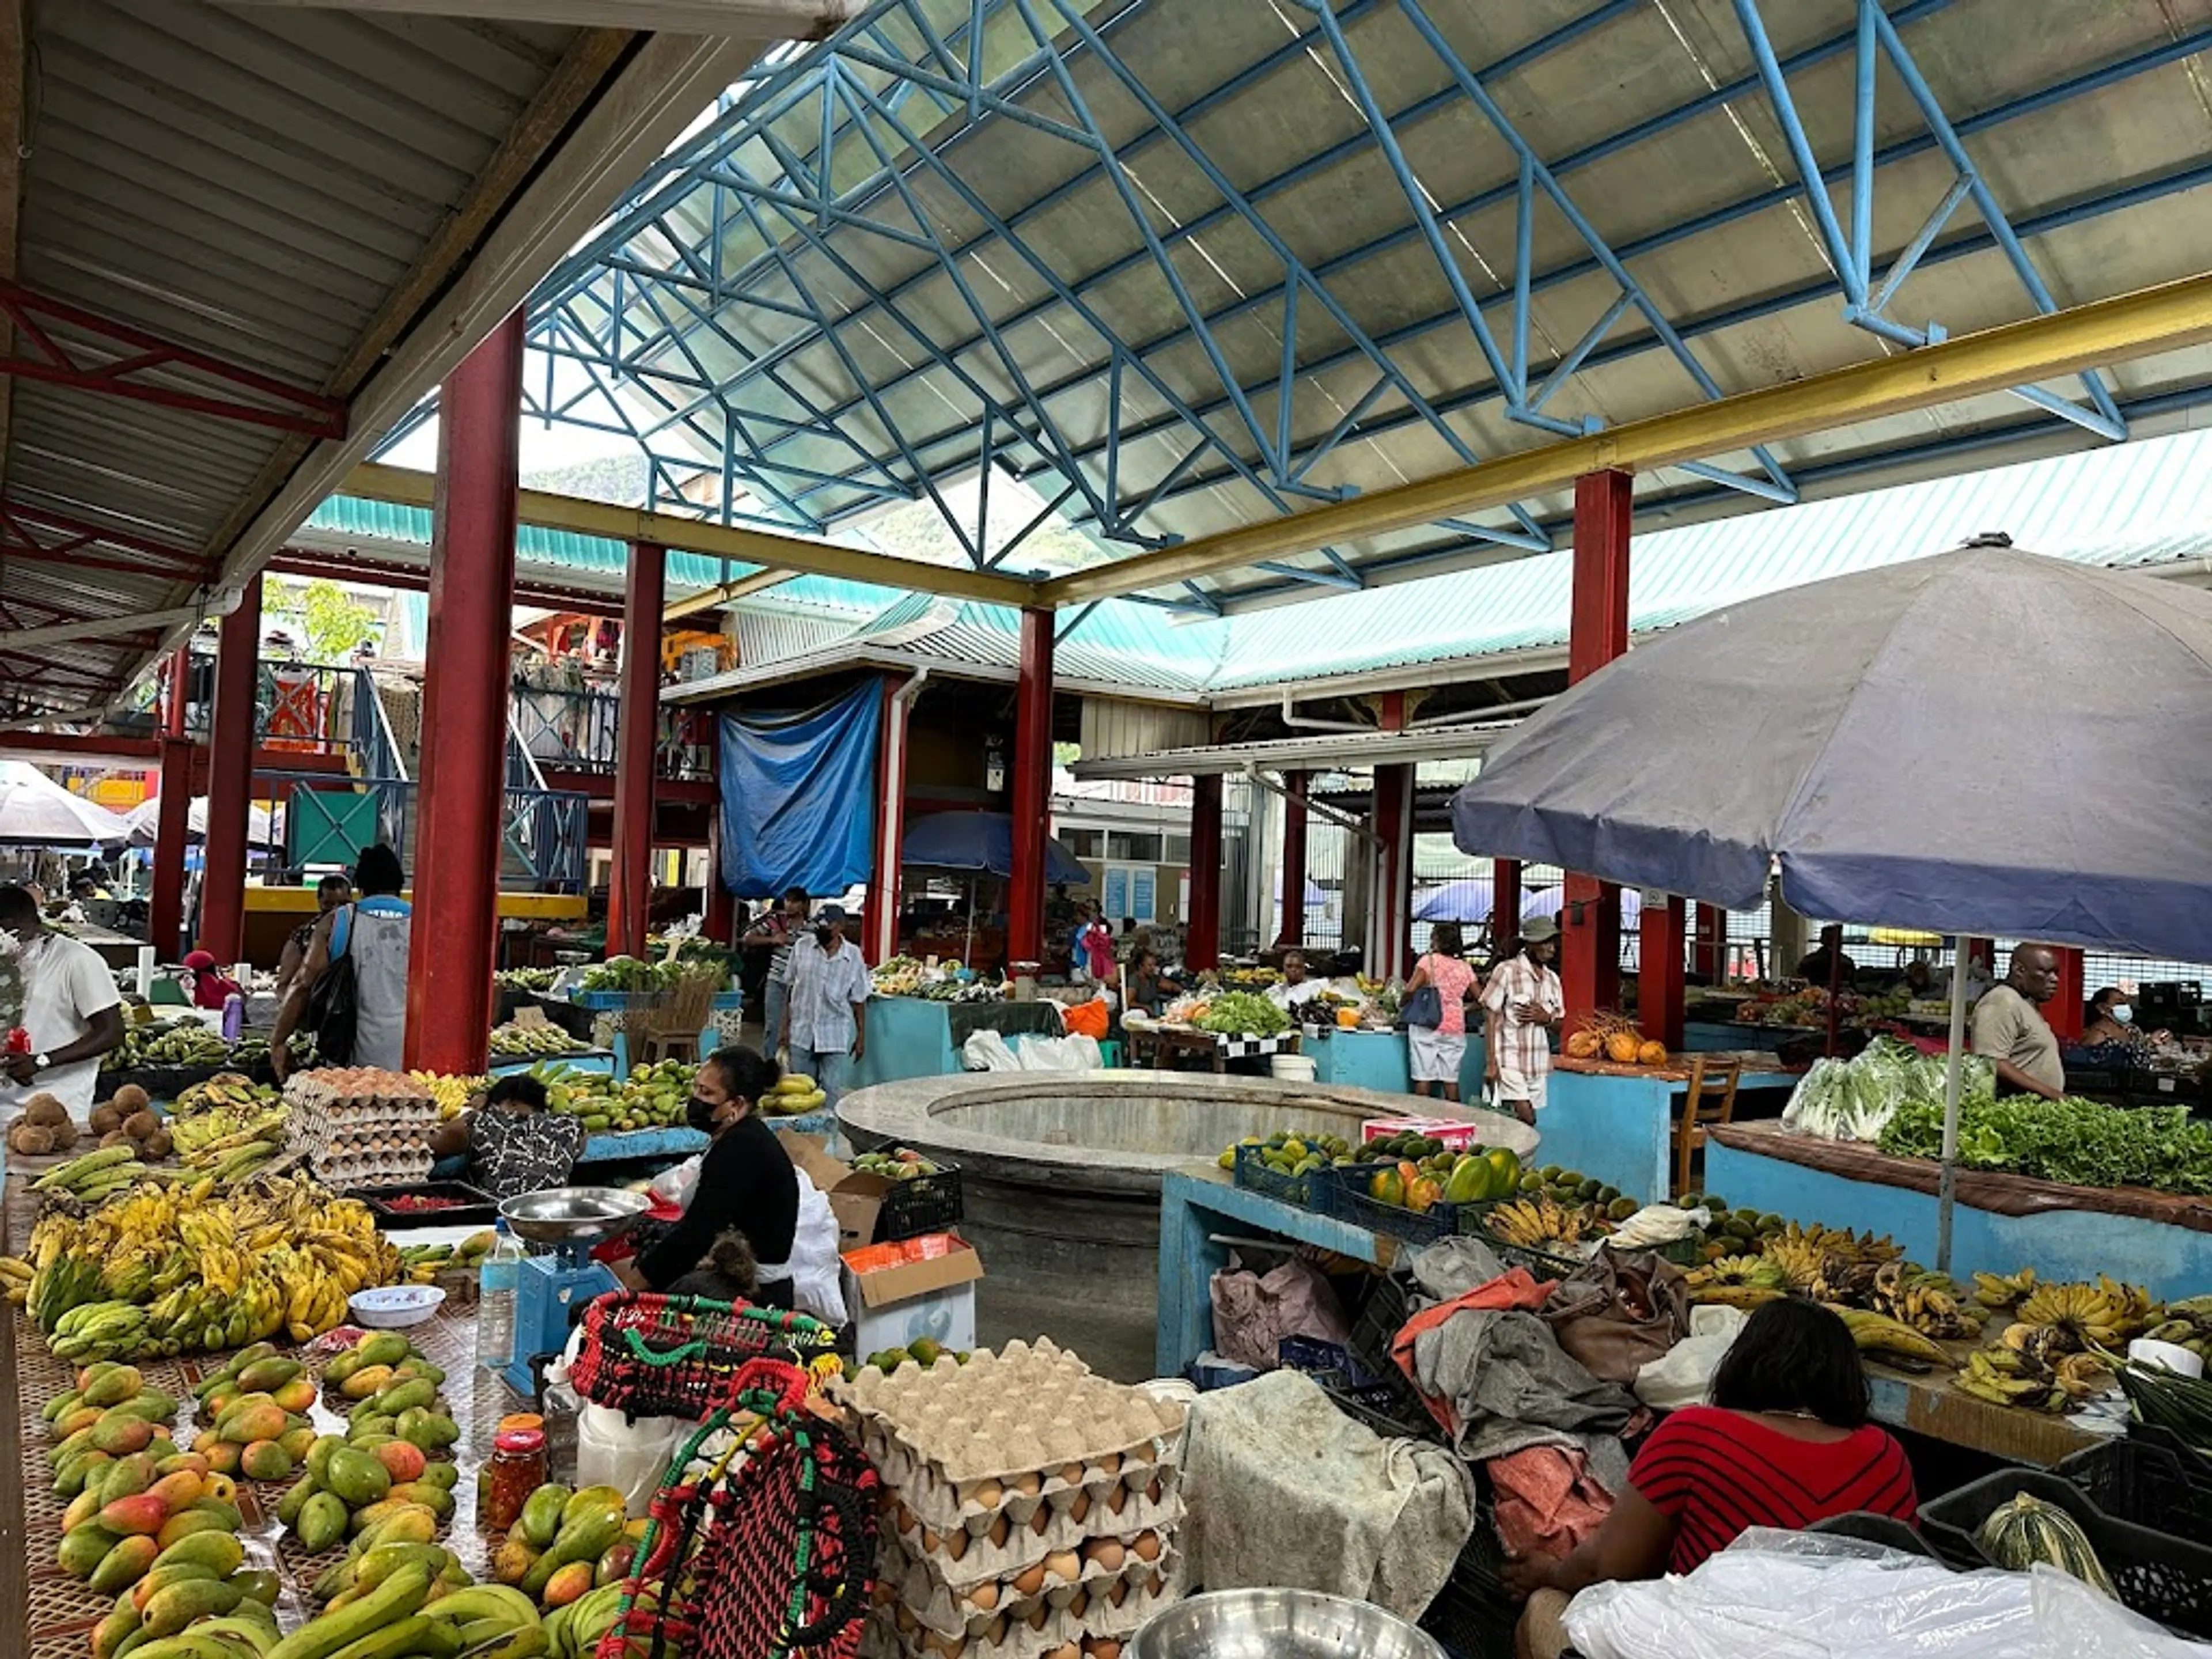 Local Market in Victoria